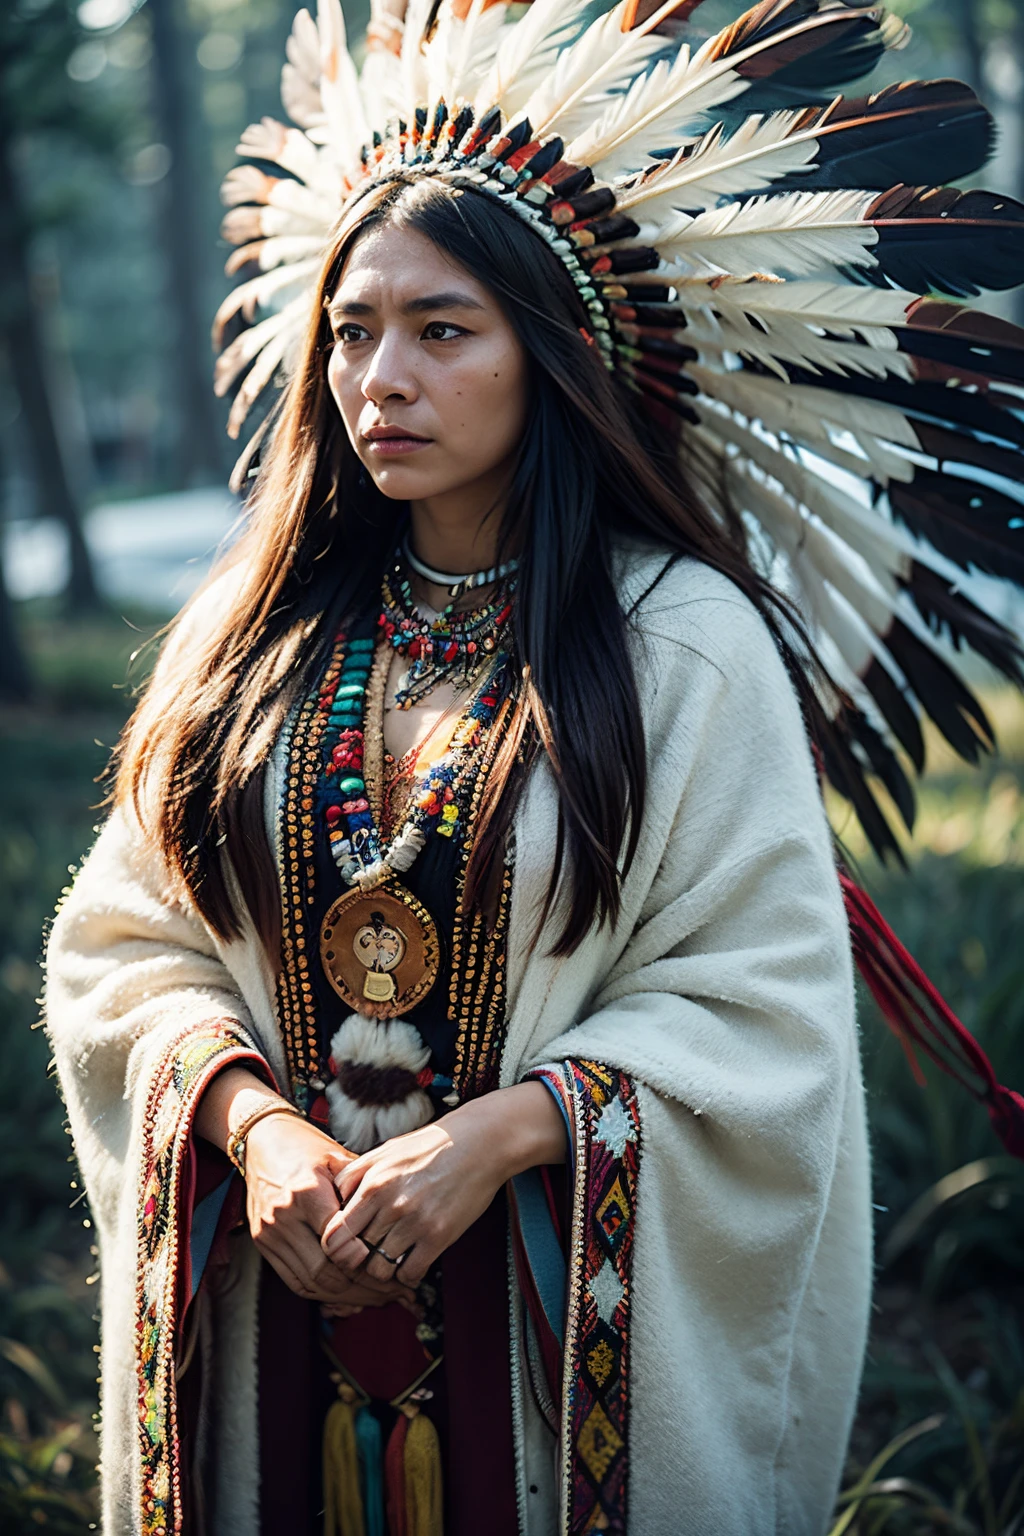 8K, 最好的品質, 超細節, 北美土著妇女, 傳統的美洲原住民服飾, 複雜的珠飾, 羽毛頭飾, 坚定而坚忍的表达, 與土地的深厚聯繫